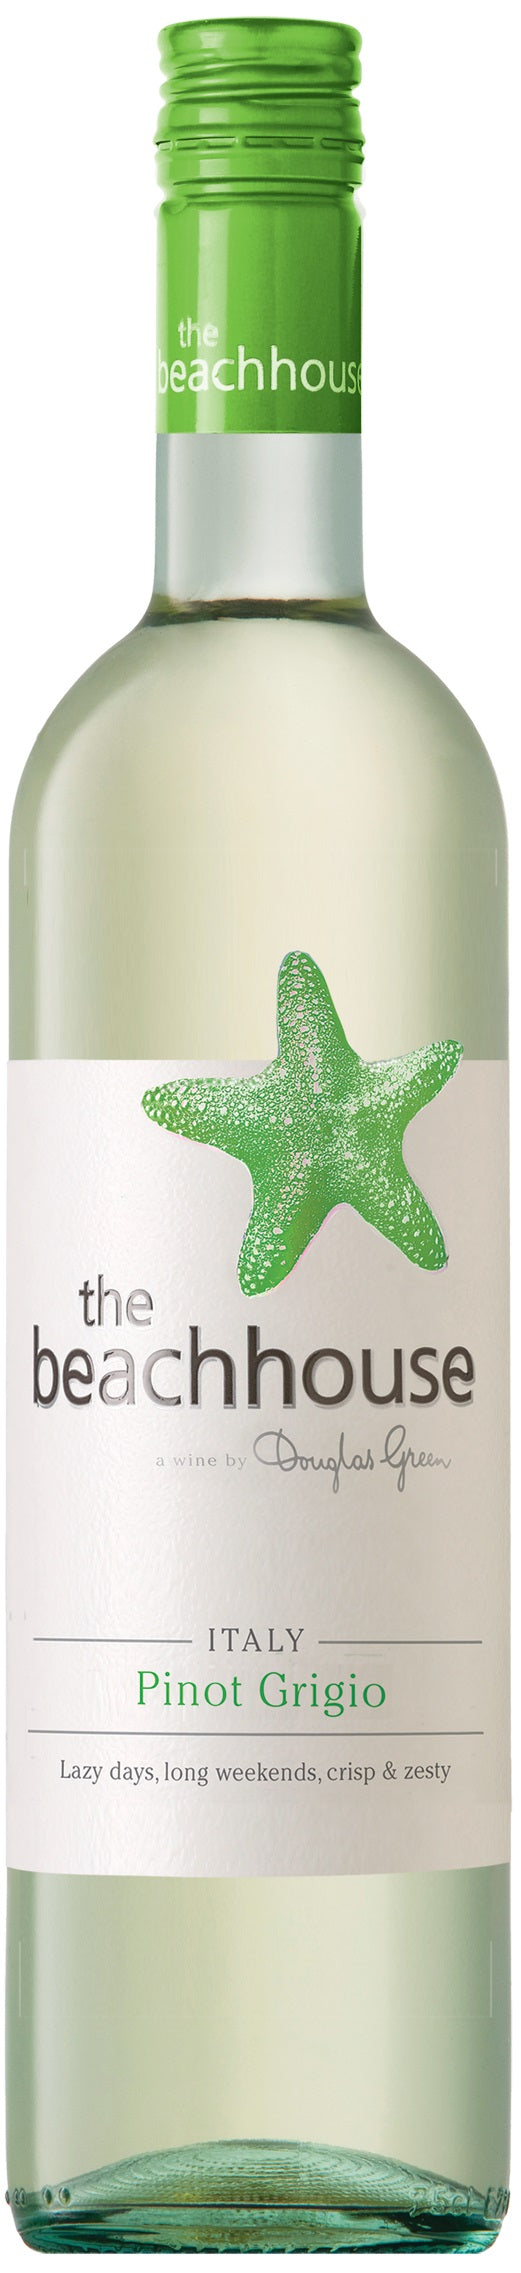 The Beachhouse Pinot Grigio 2020